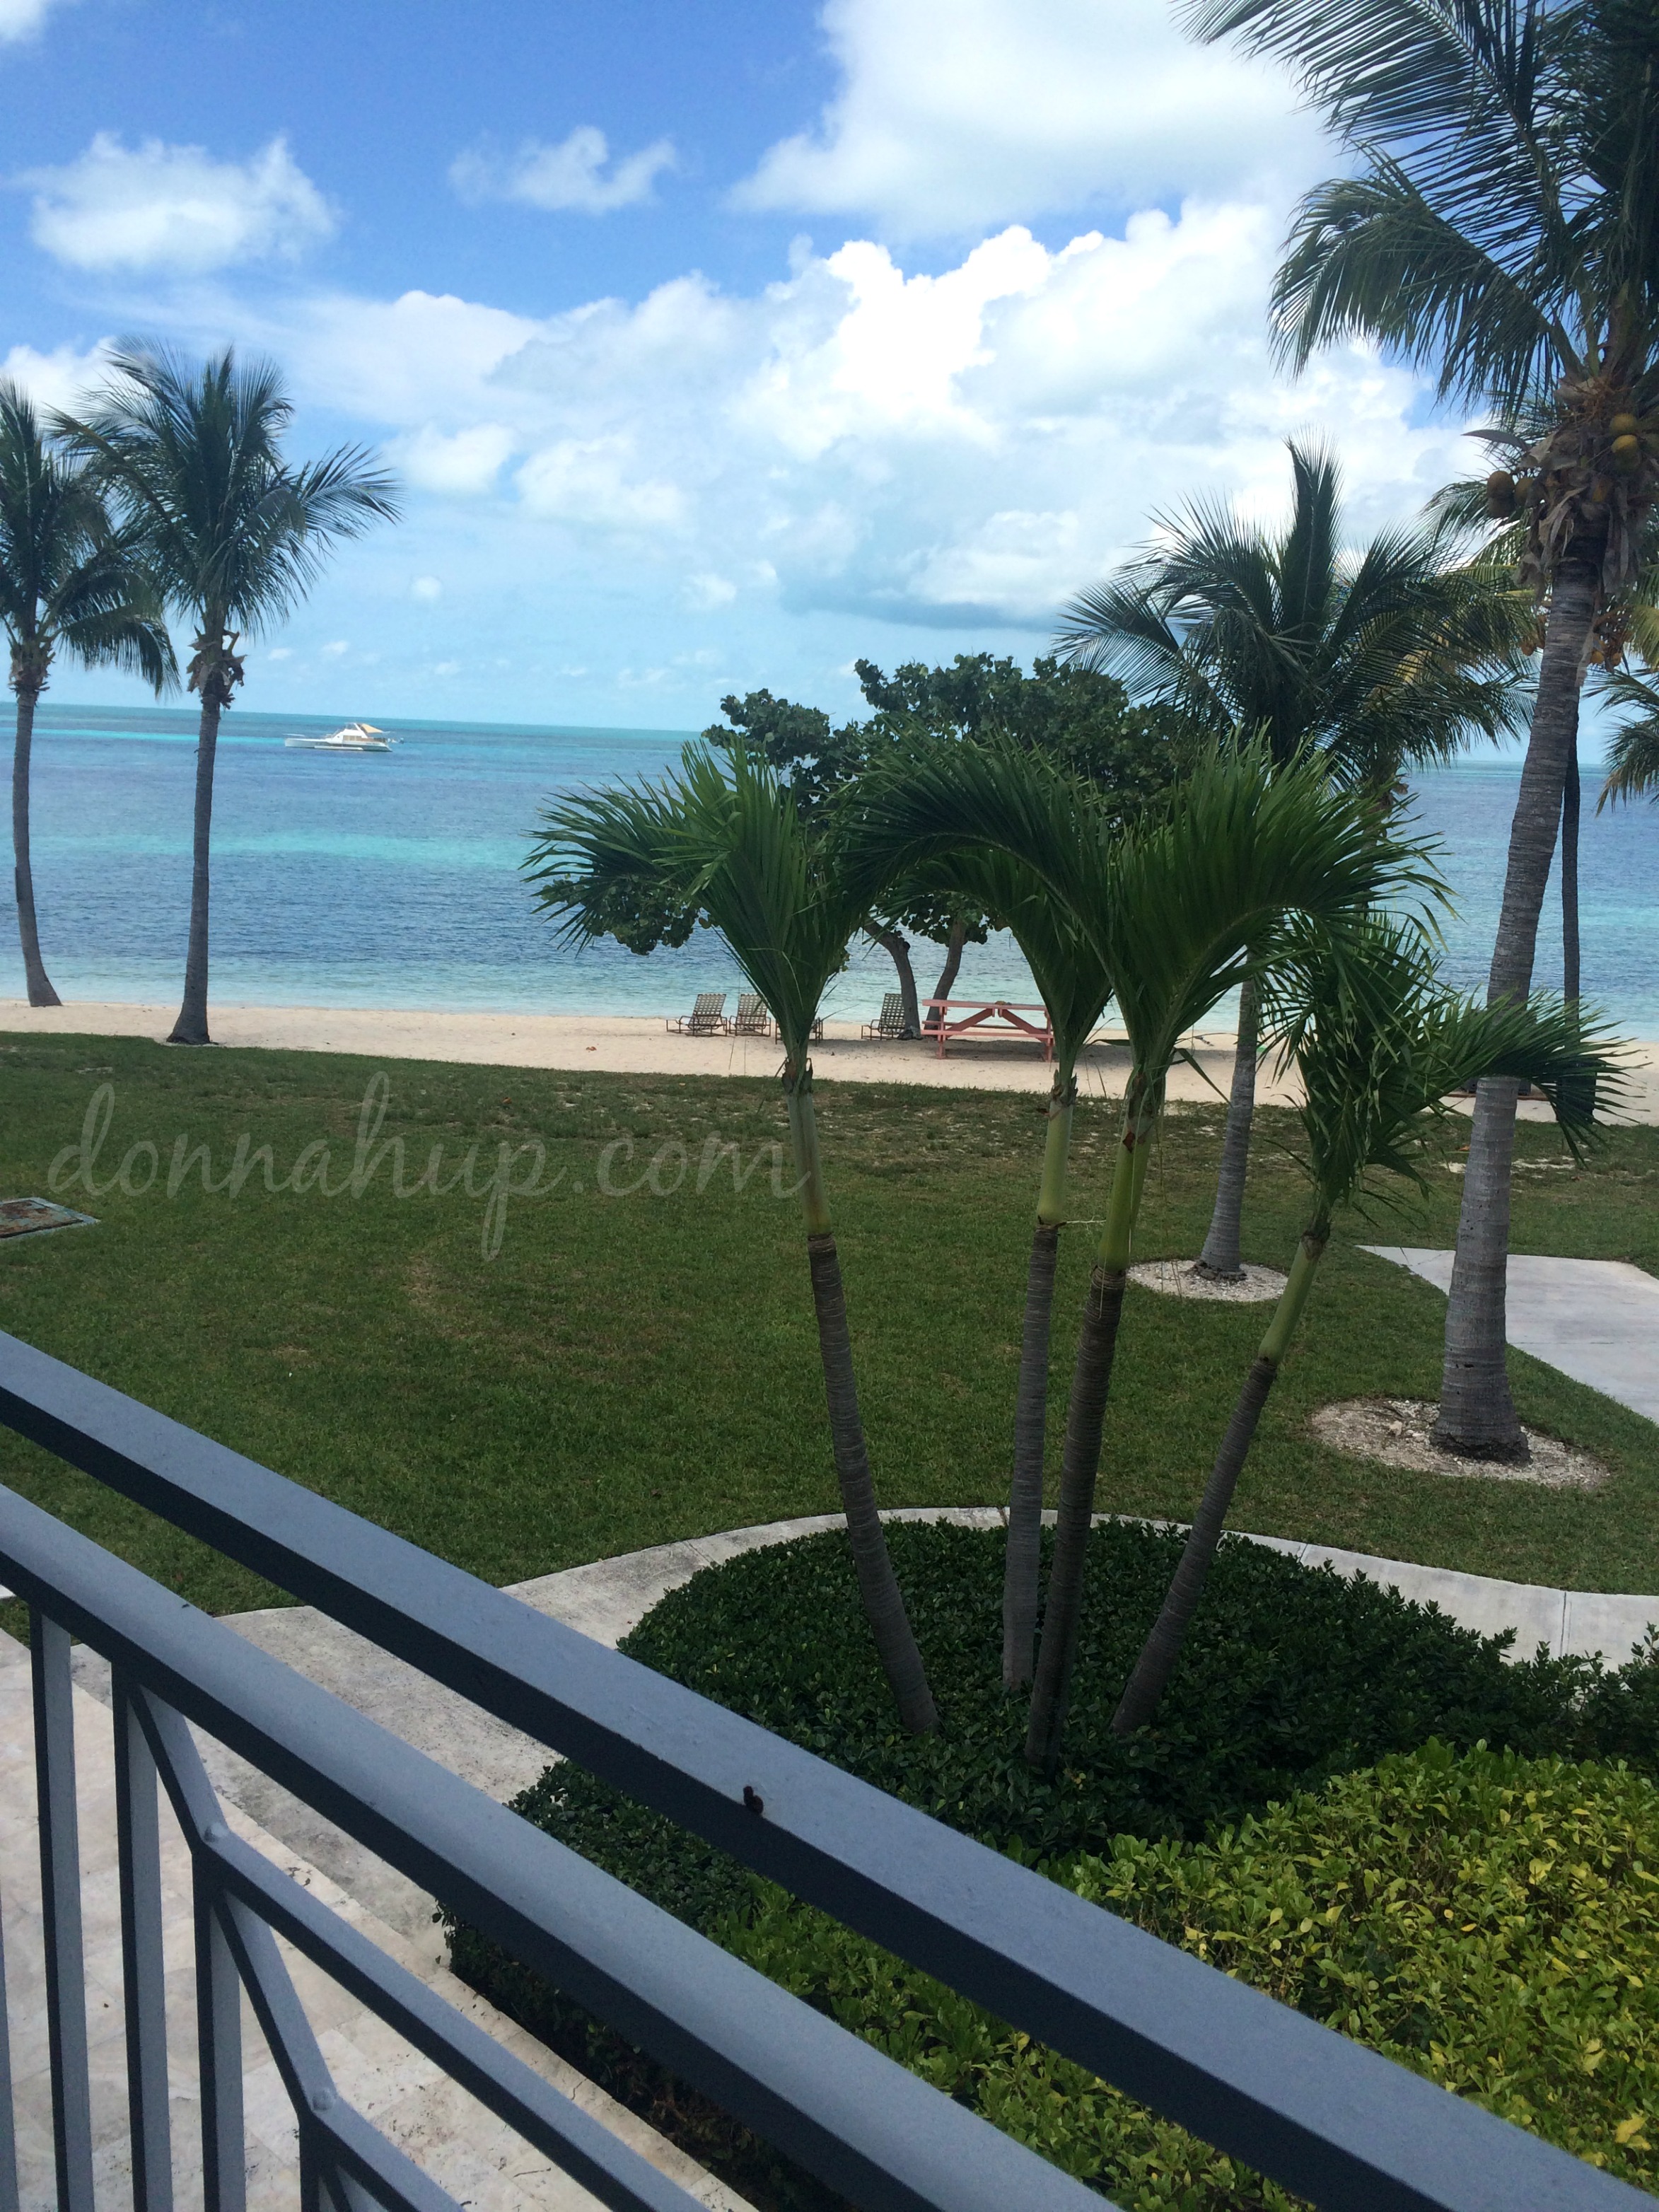 Best Hotel in Bahamas? Old Bahama Bay!